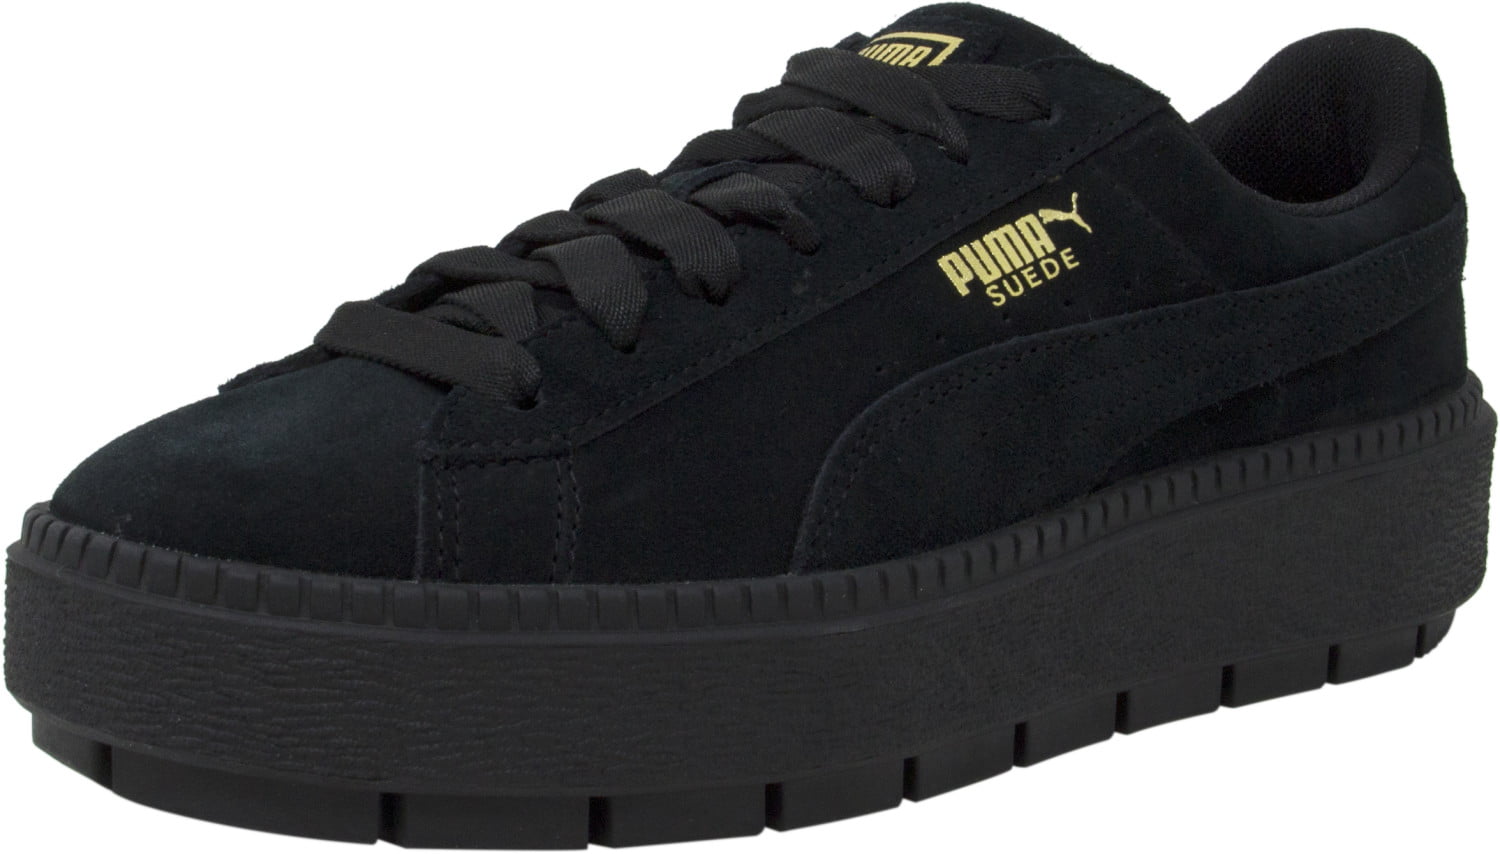 Stoffelijk overschot lus spion Puma Women's Platform Trace Black / Suede Fashion Sneaker - 8.5M -  Walmart.com